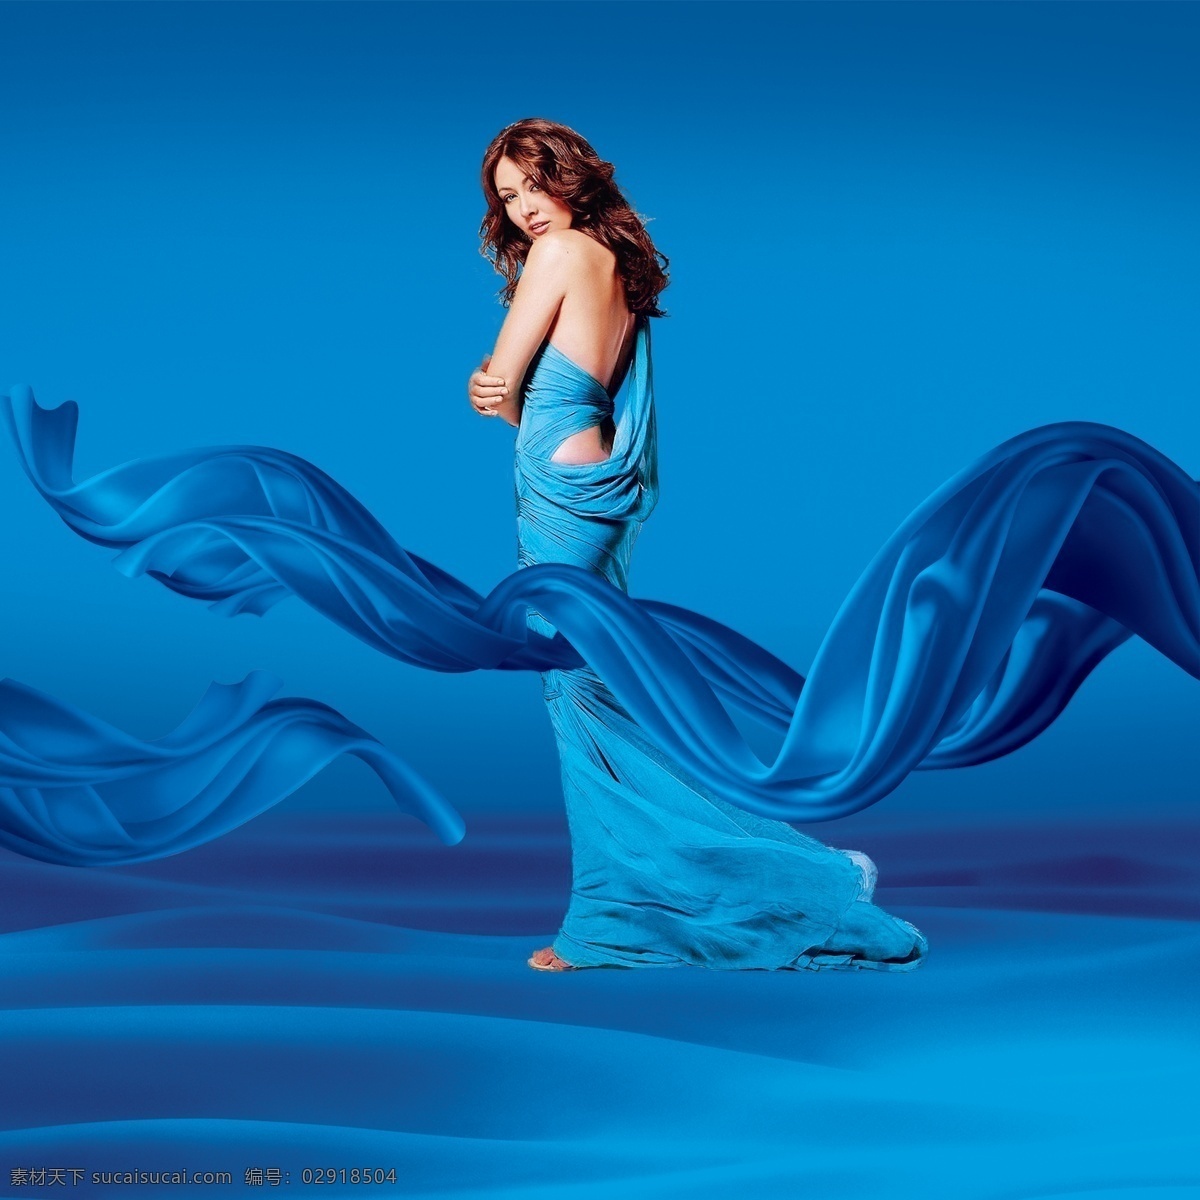 美女 蓝色 礼服 丝绸 海洋 蓝色礼服 蓝色丝绸 蓝色海洋 背景素材 广告元素 海报素材